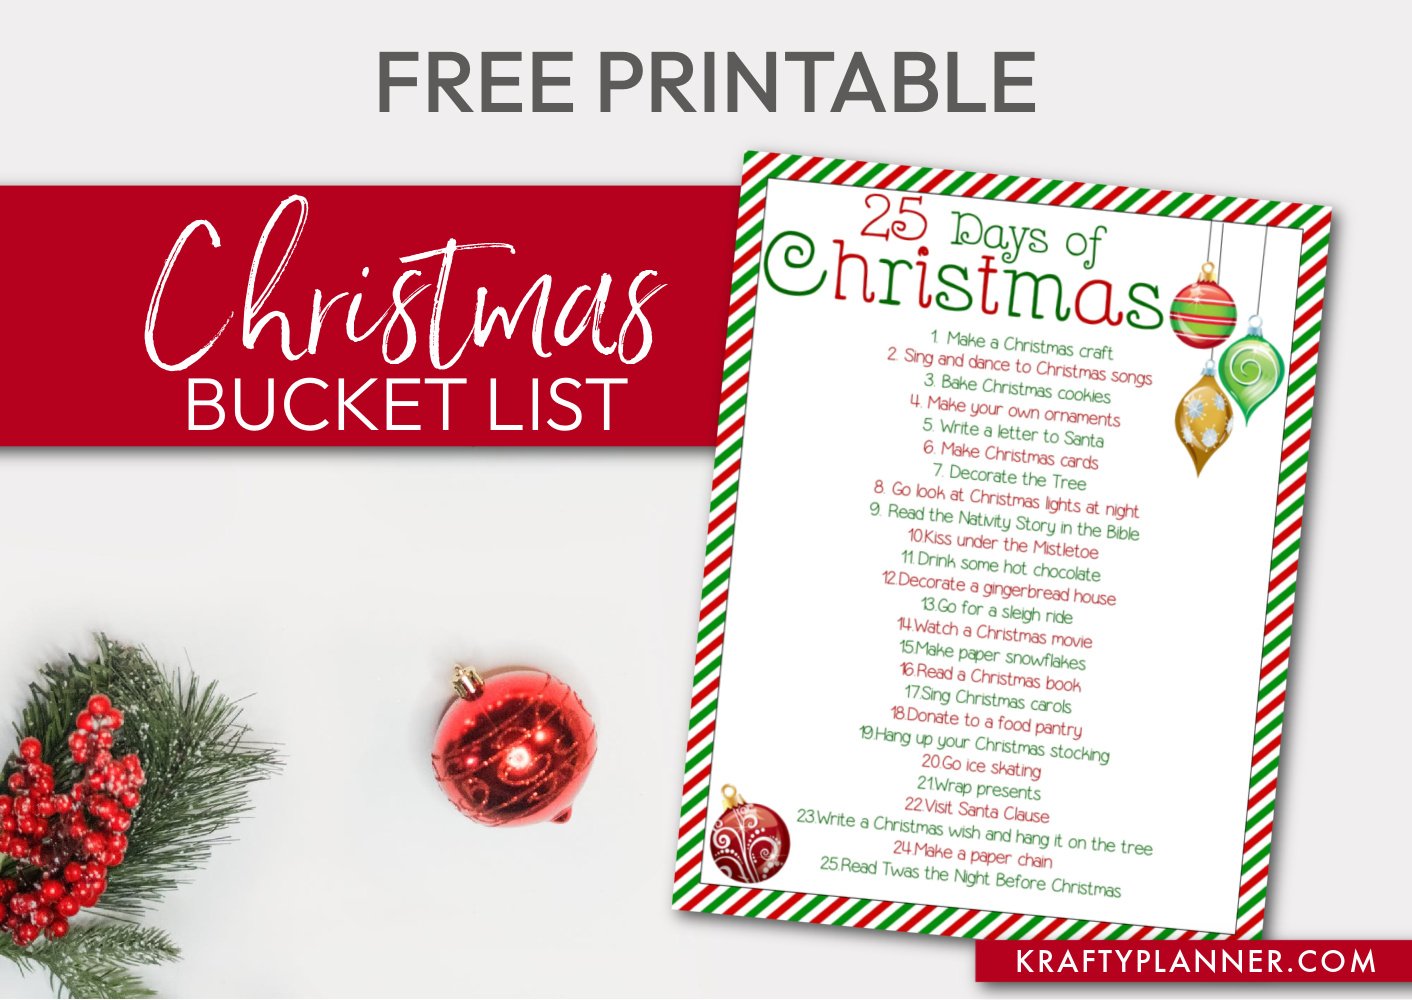 25 Days of Christmas Free Printable Bucket List